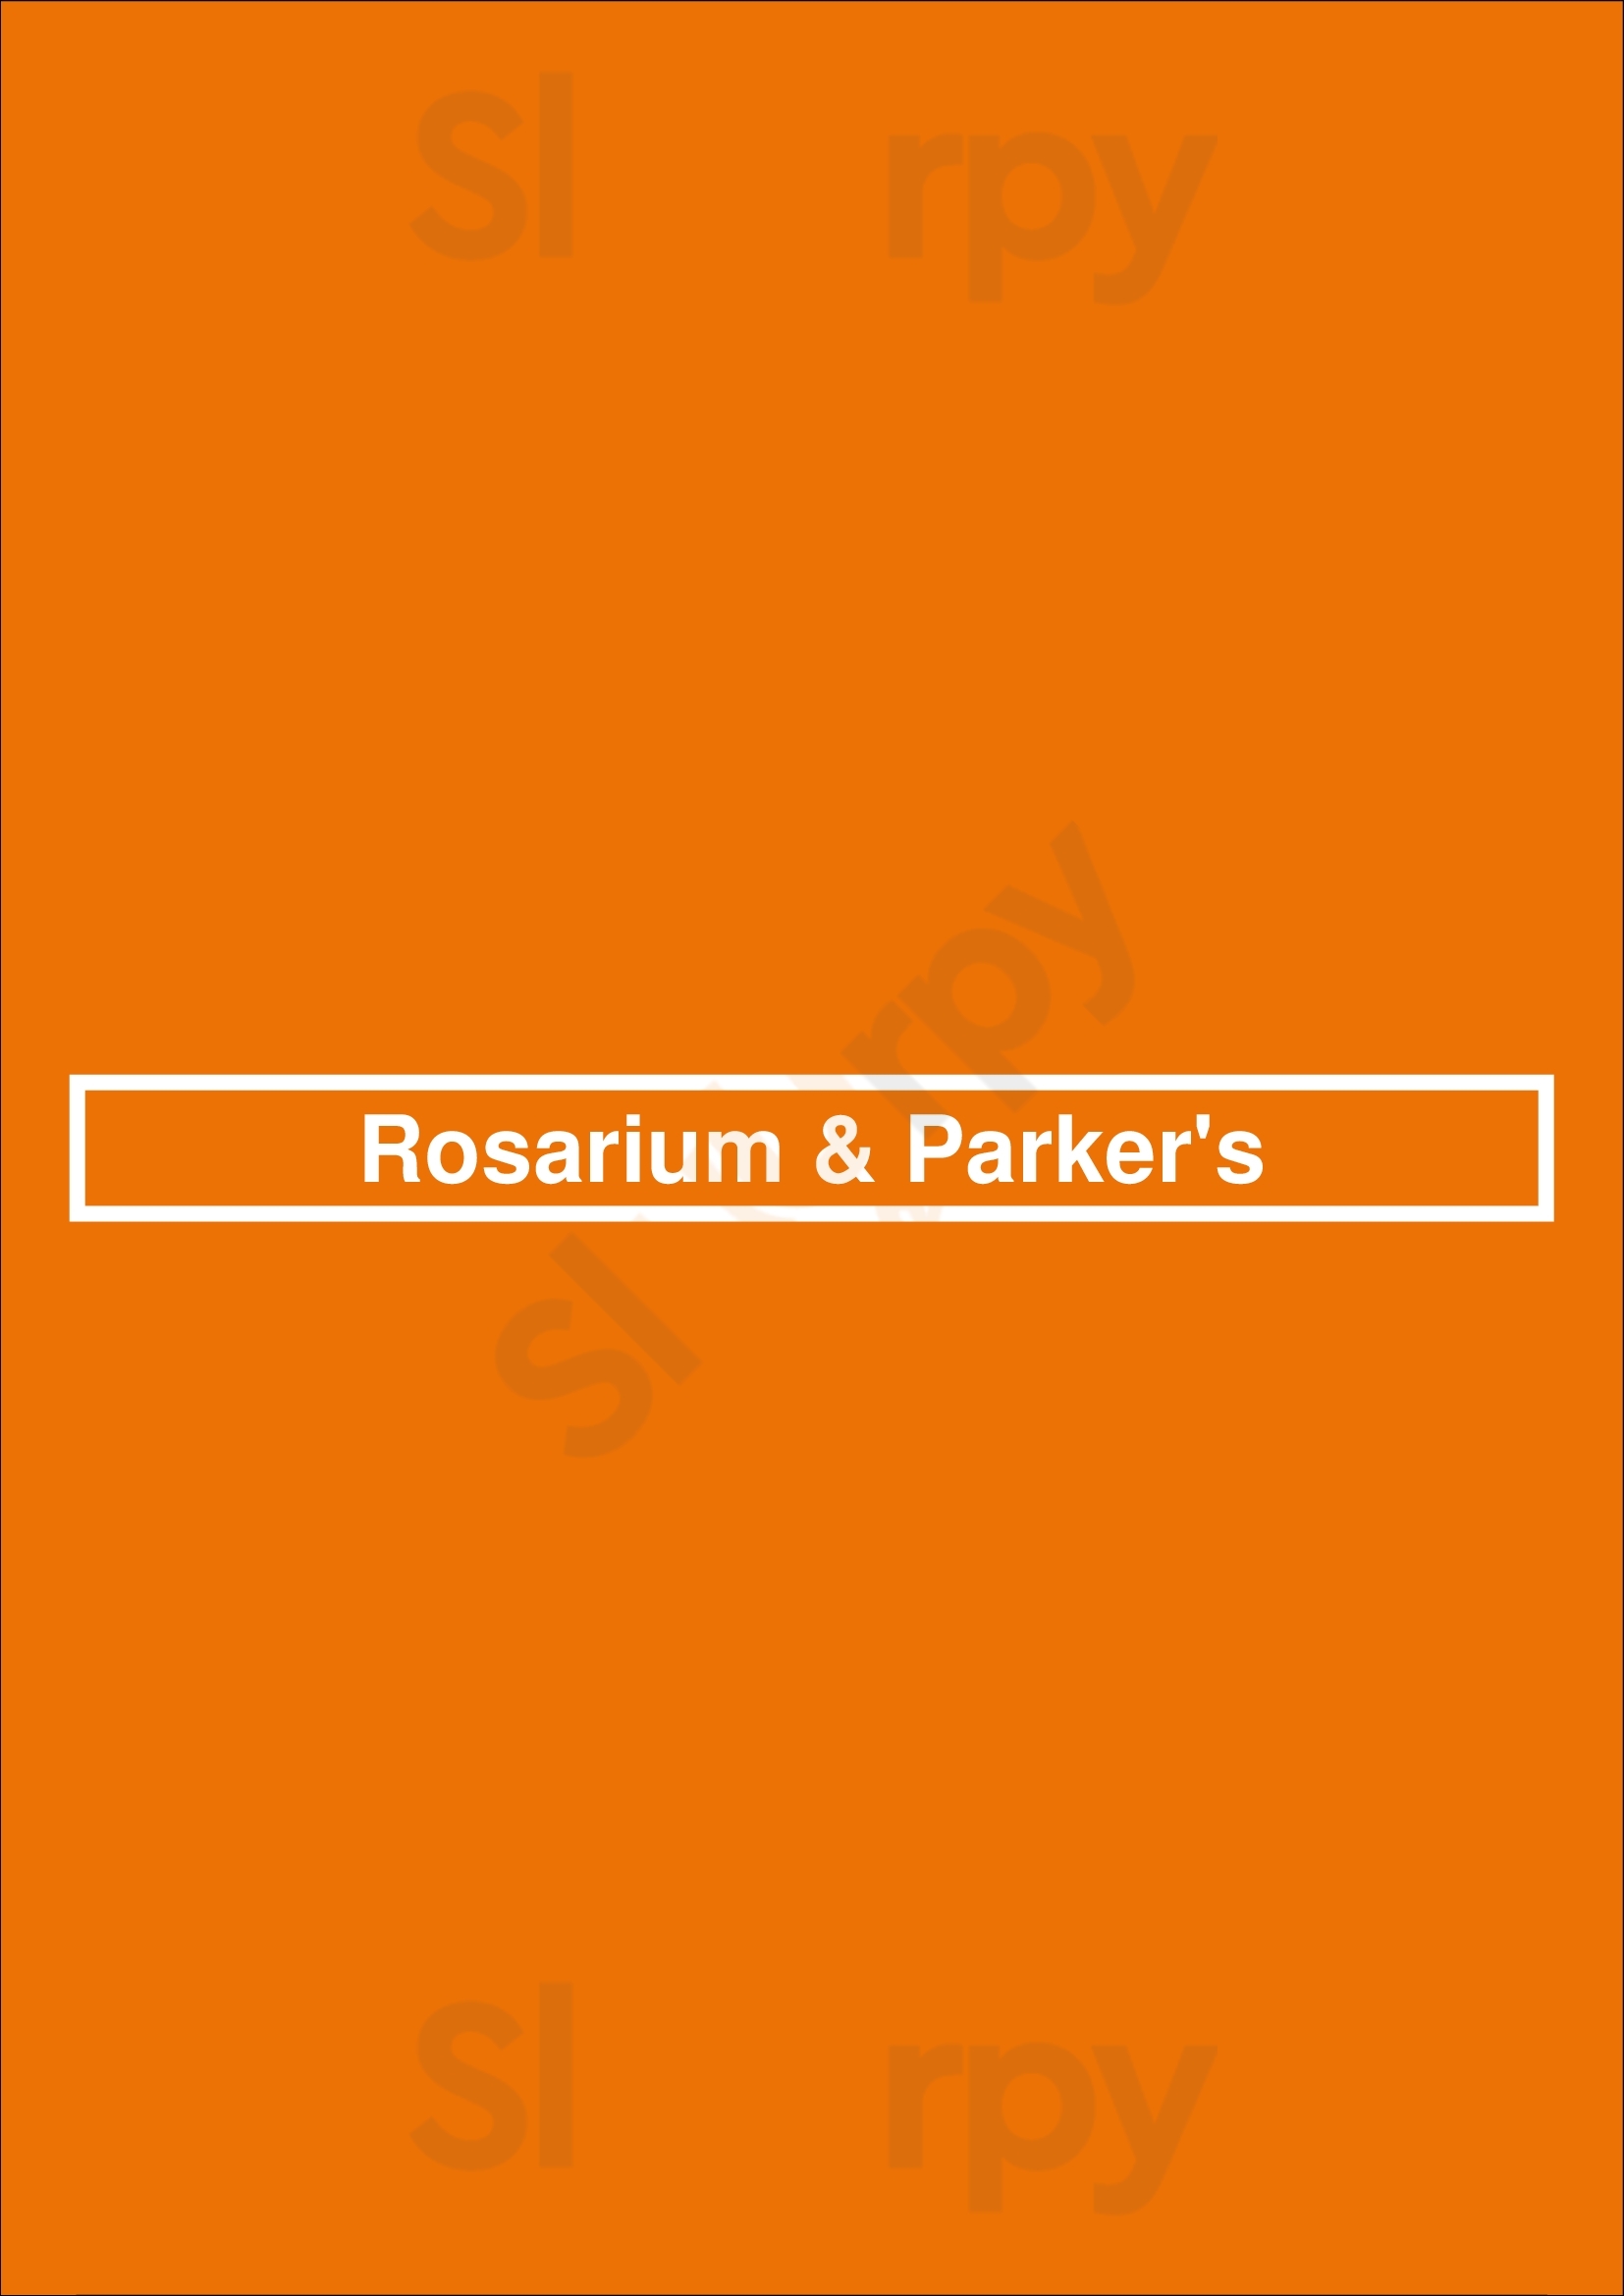 Rosarium & Parker's Amsterdam Menu - 1